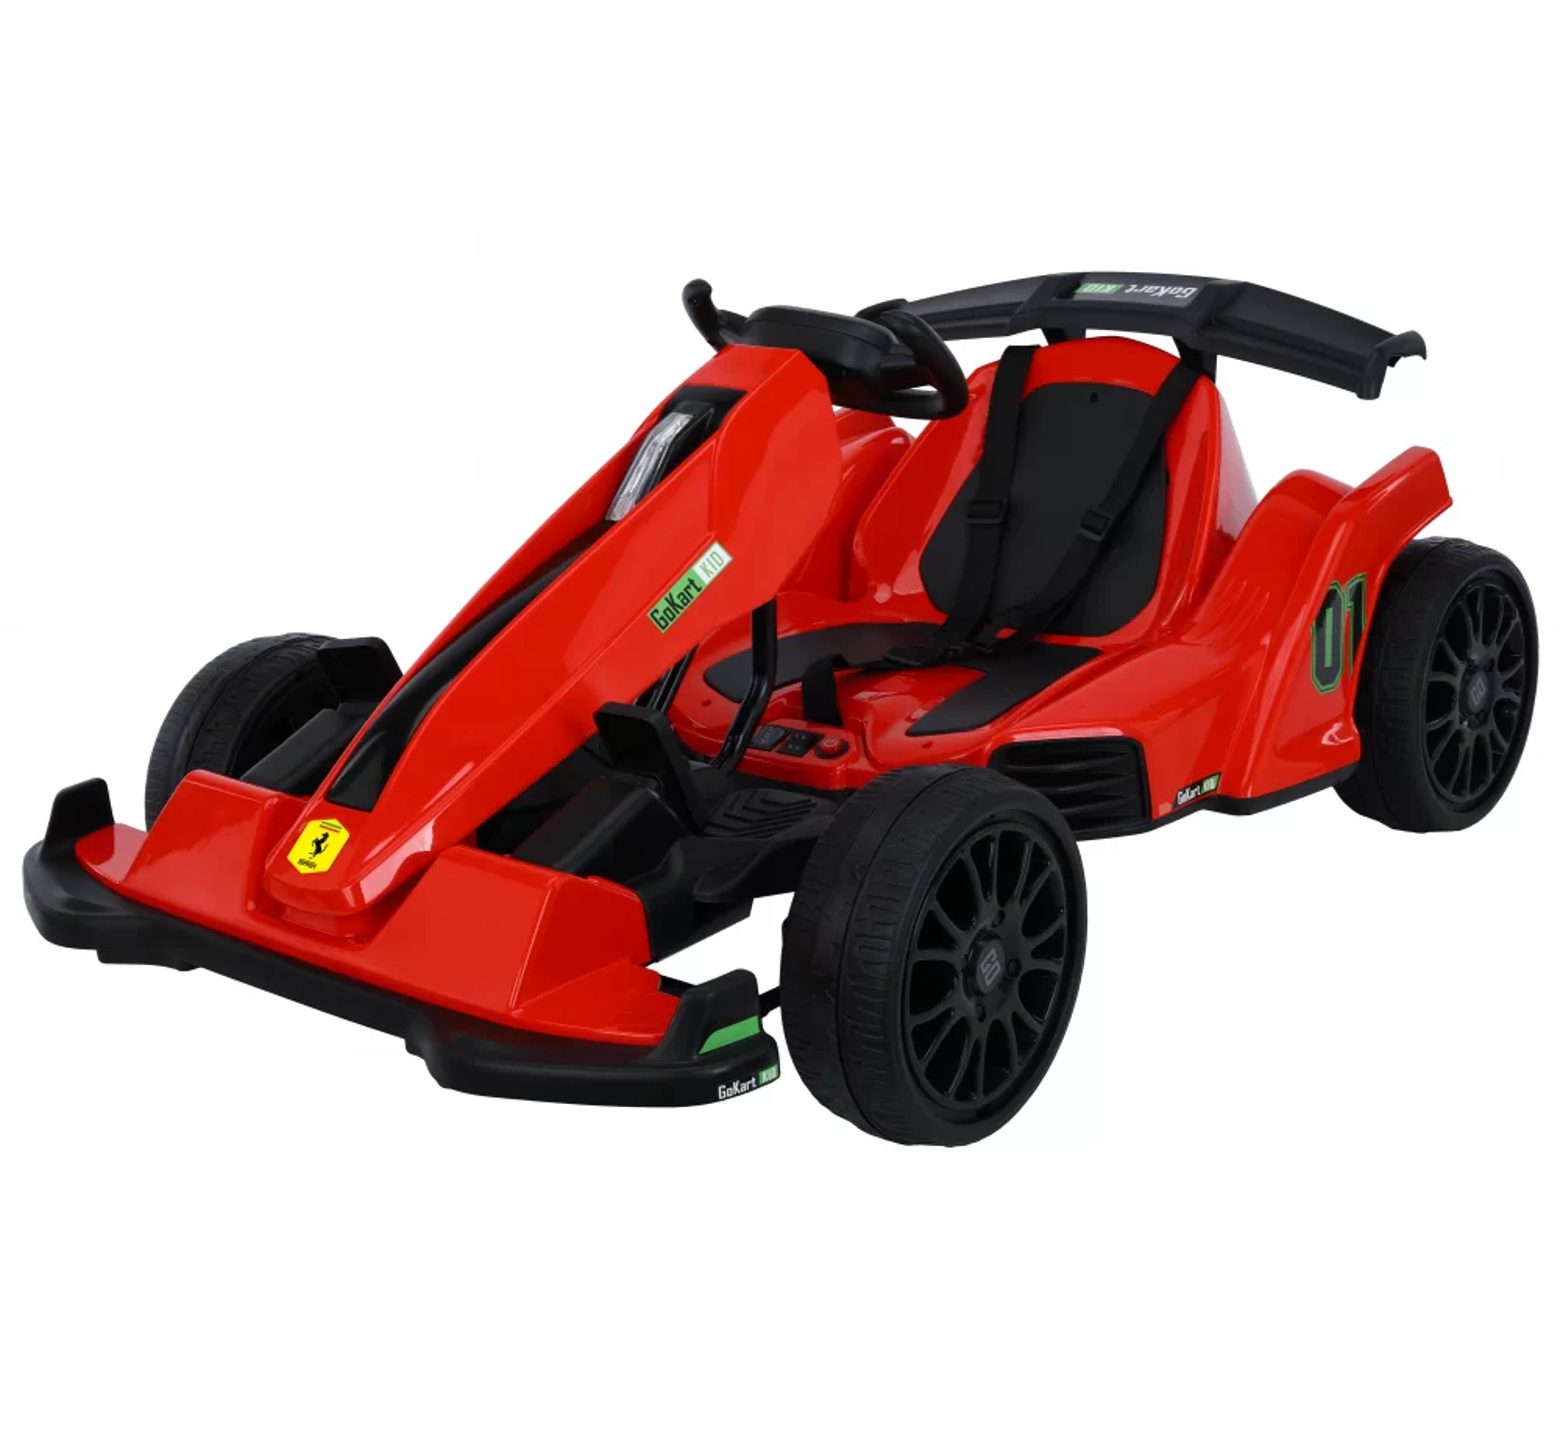 Ηλεκτροκίνητη παιδική Formula Licensed Ferrari 12v ρυθμιζόμενη για ηλικίες 3 έως 8 ετών και ελαστικά τύπου αυτοκινήτου